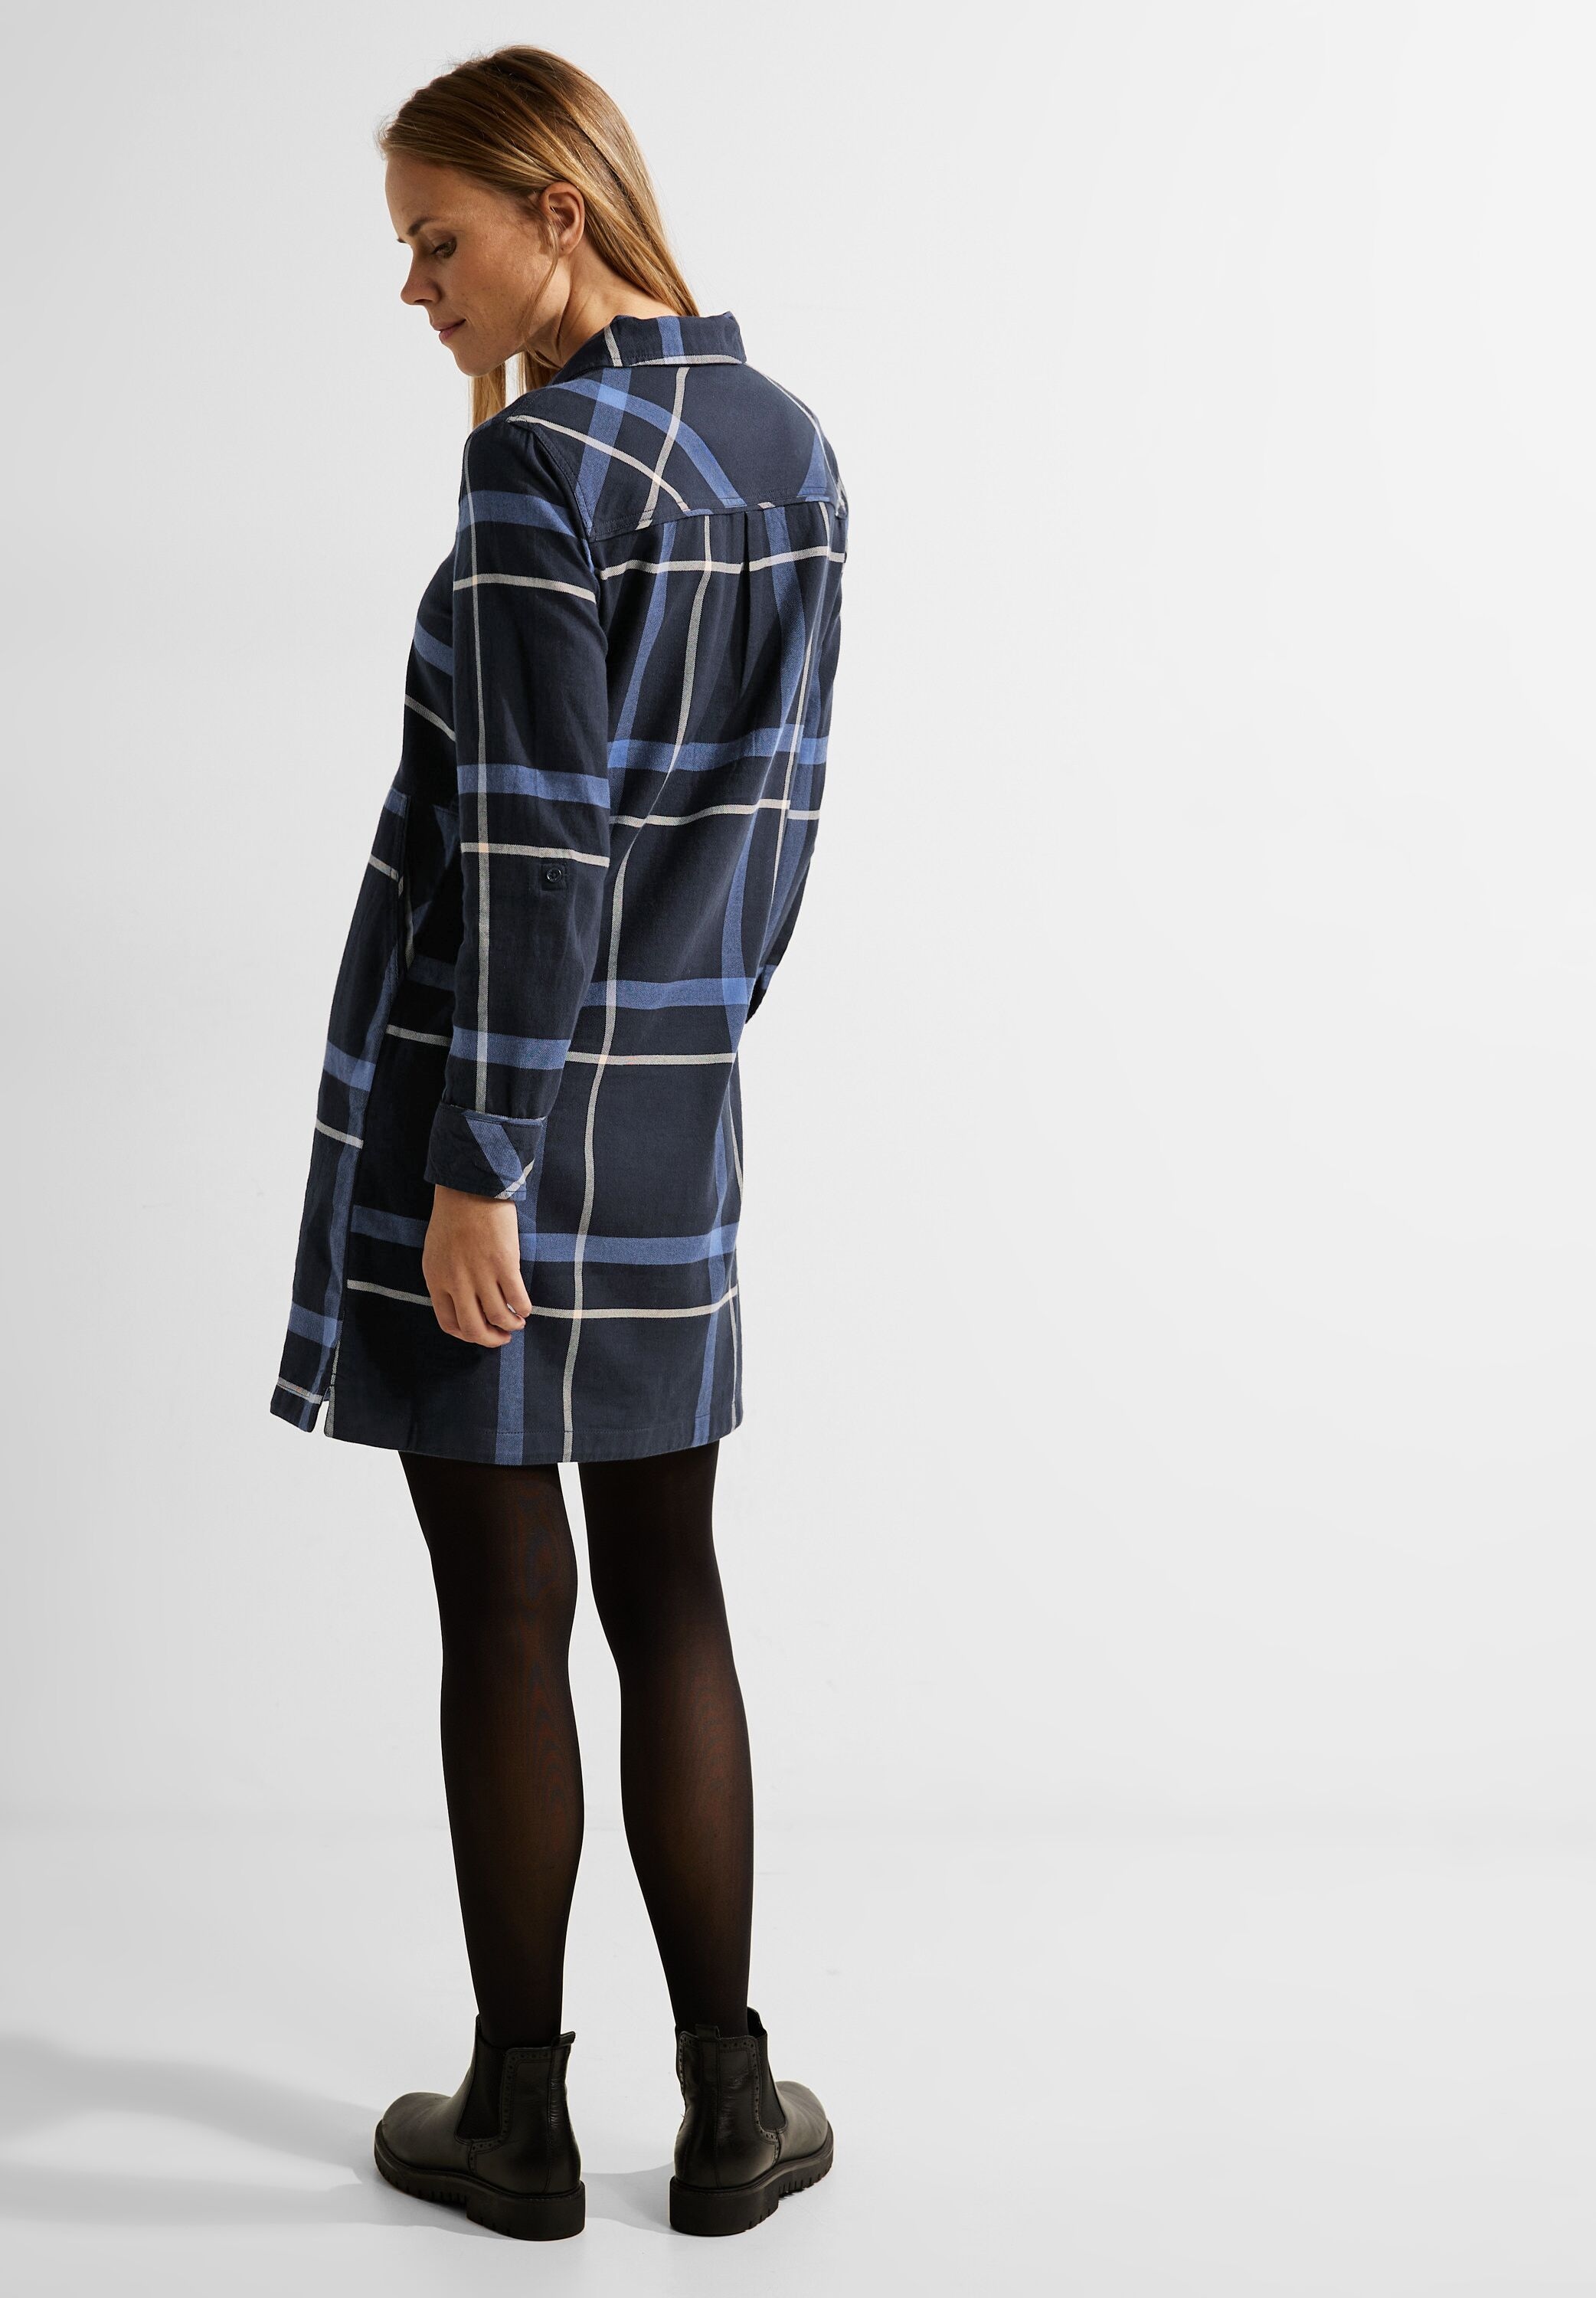 kaufen »Flannel Check Cecil Online Shop Blusenkleid OTTO Dress« im